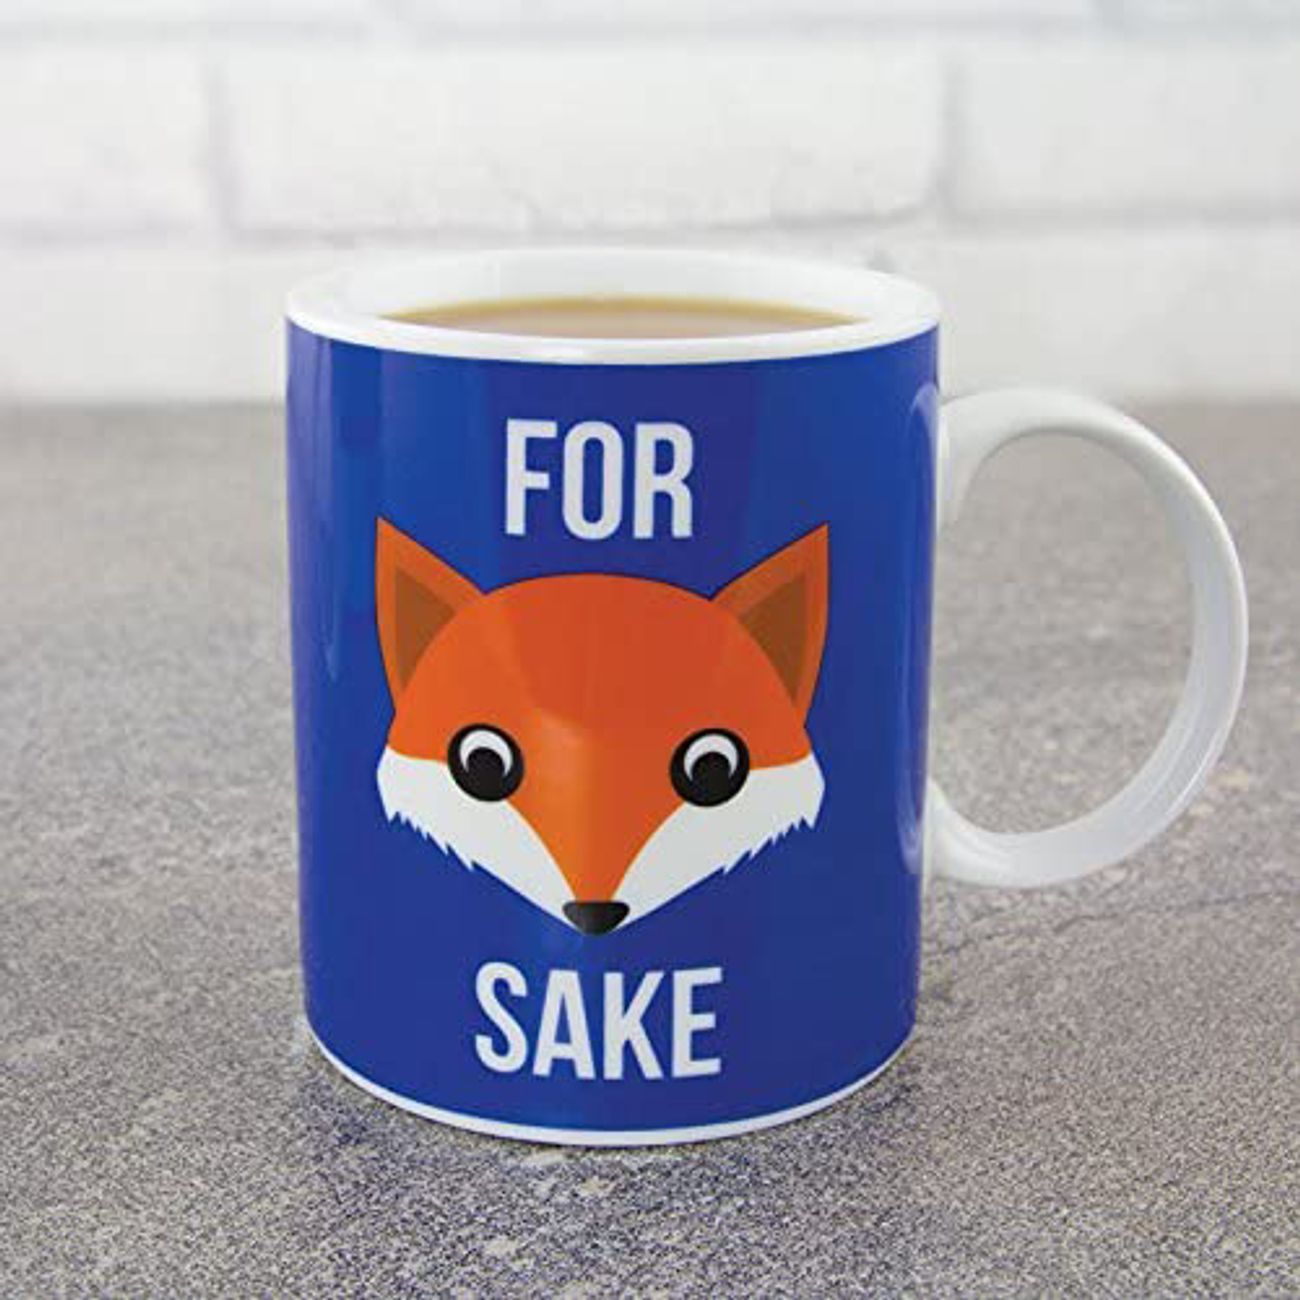 for-fox-sake-mugg-2